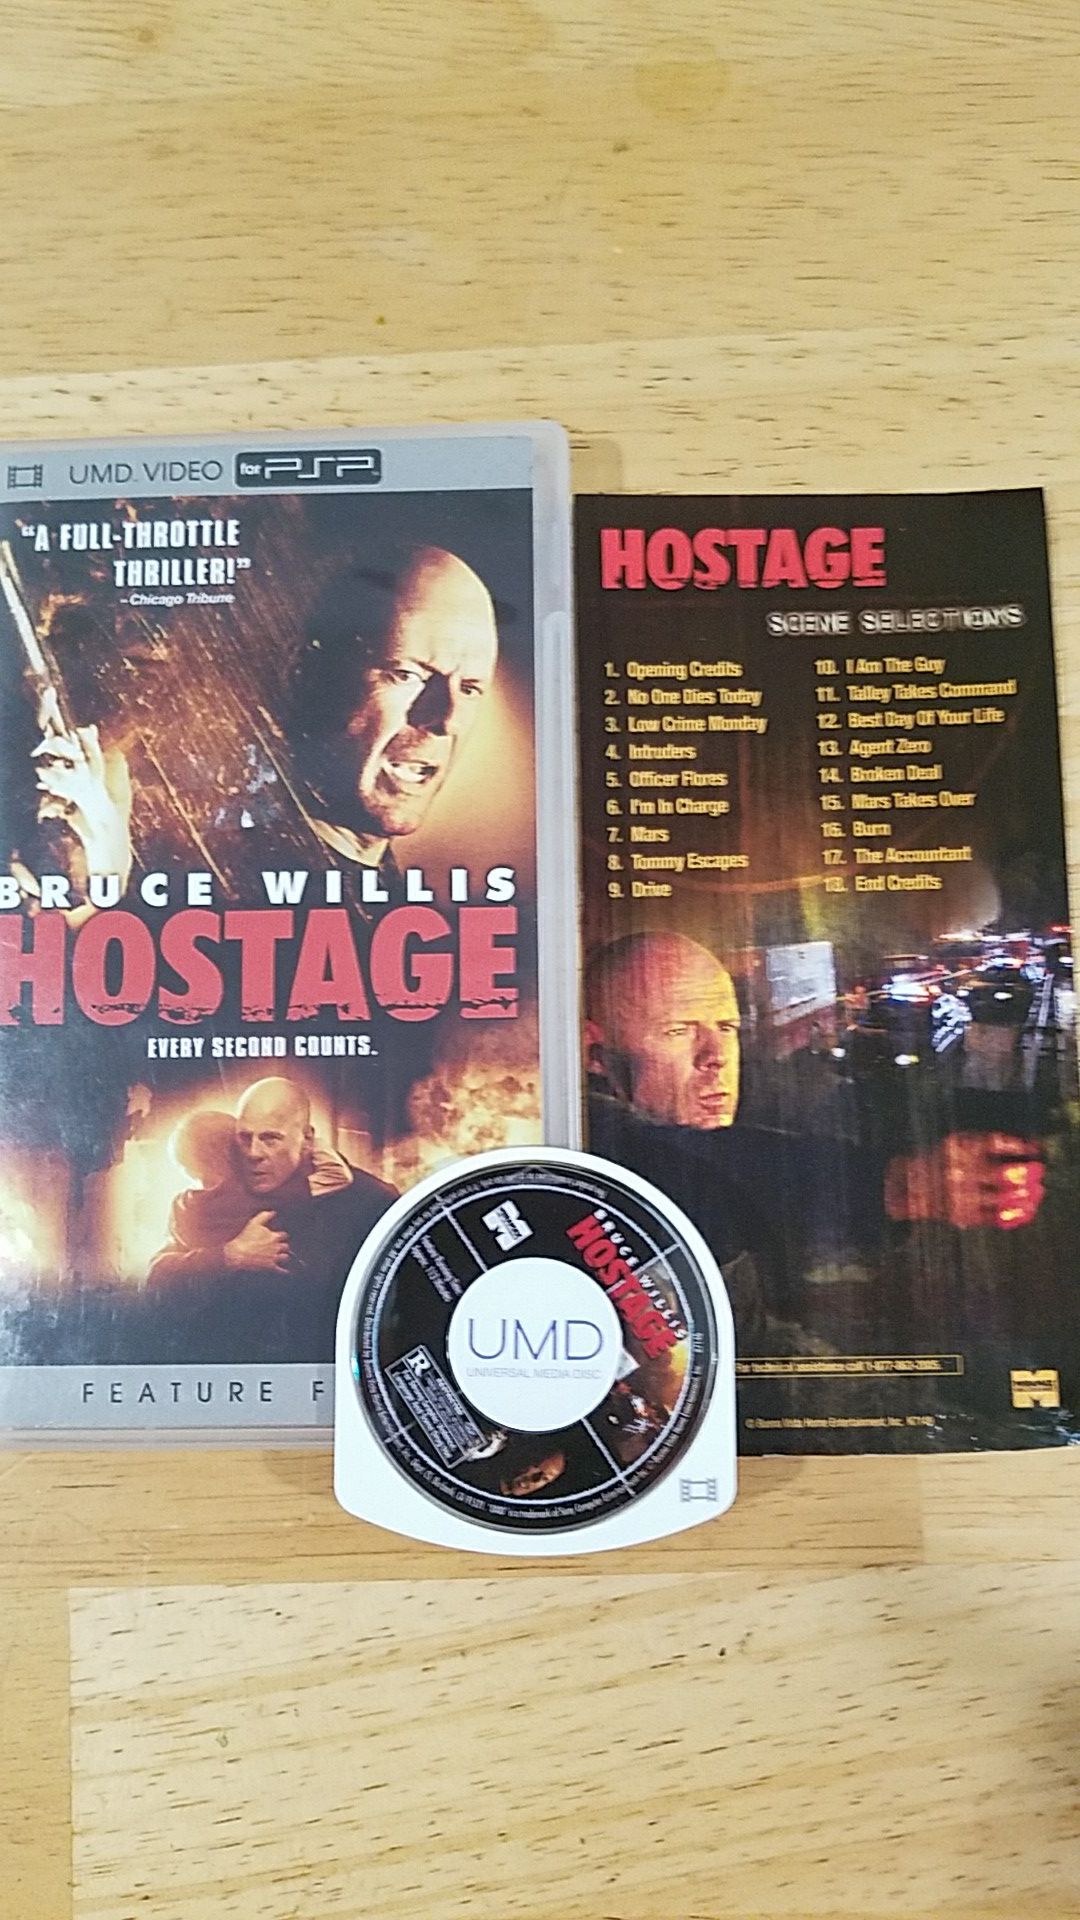 HOSTAGE starring Bruce Willis for PSP